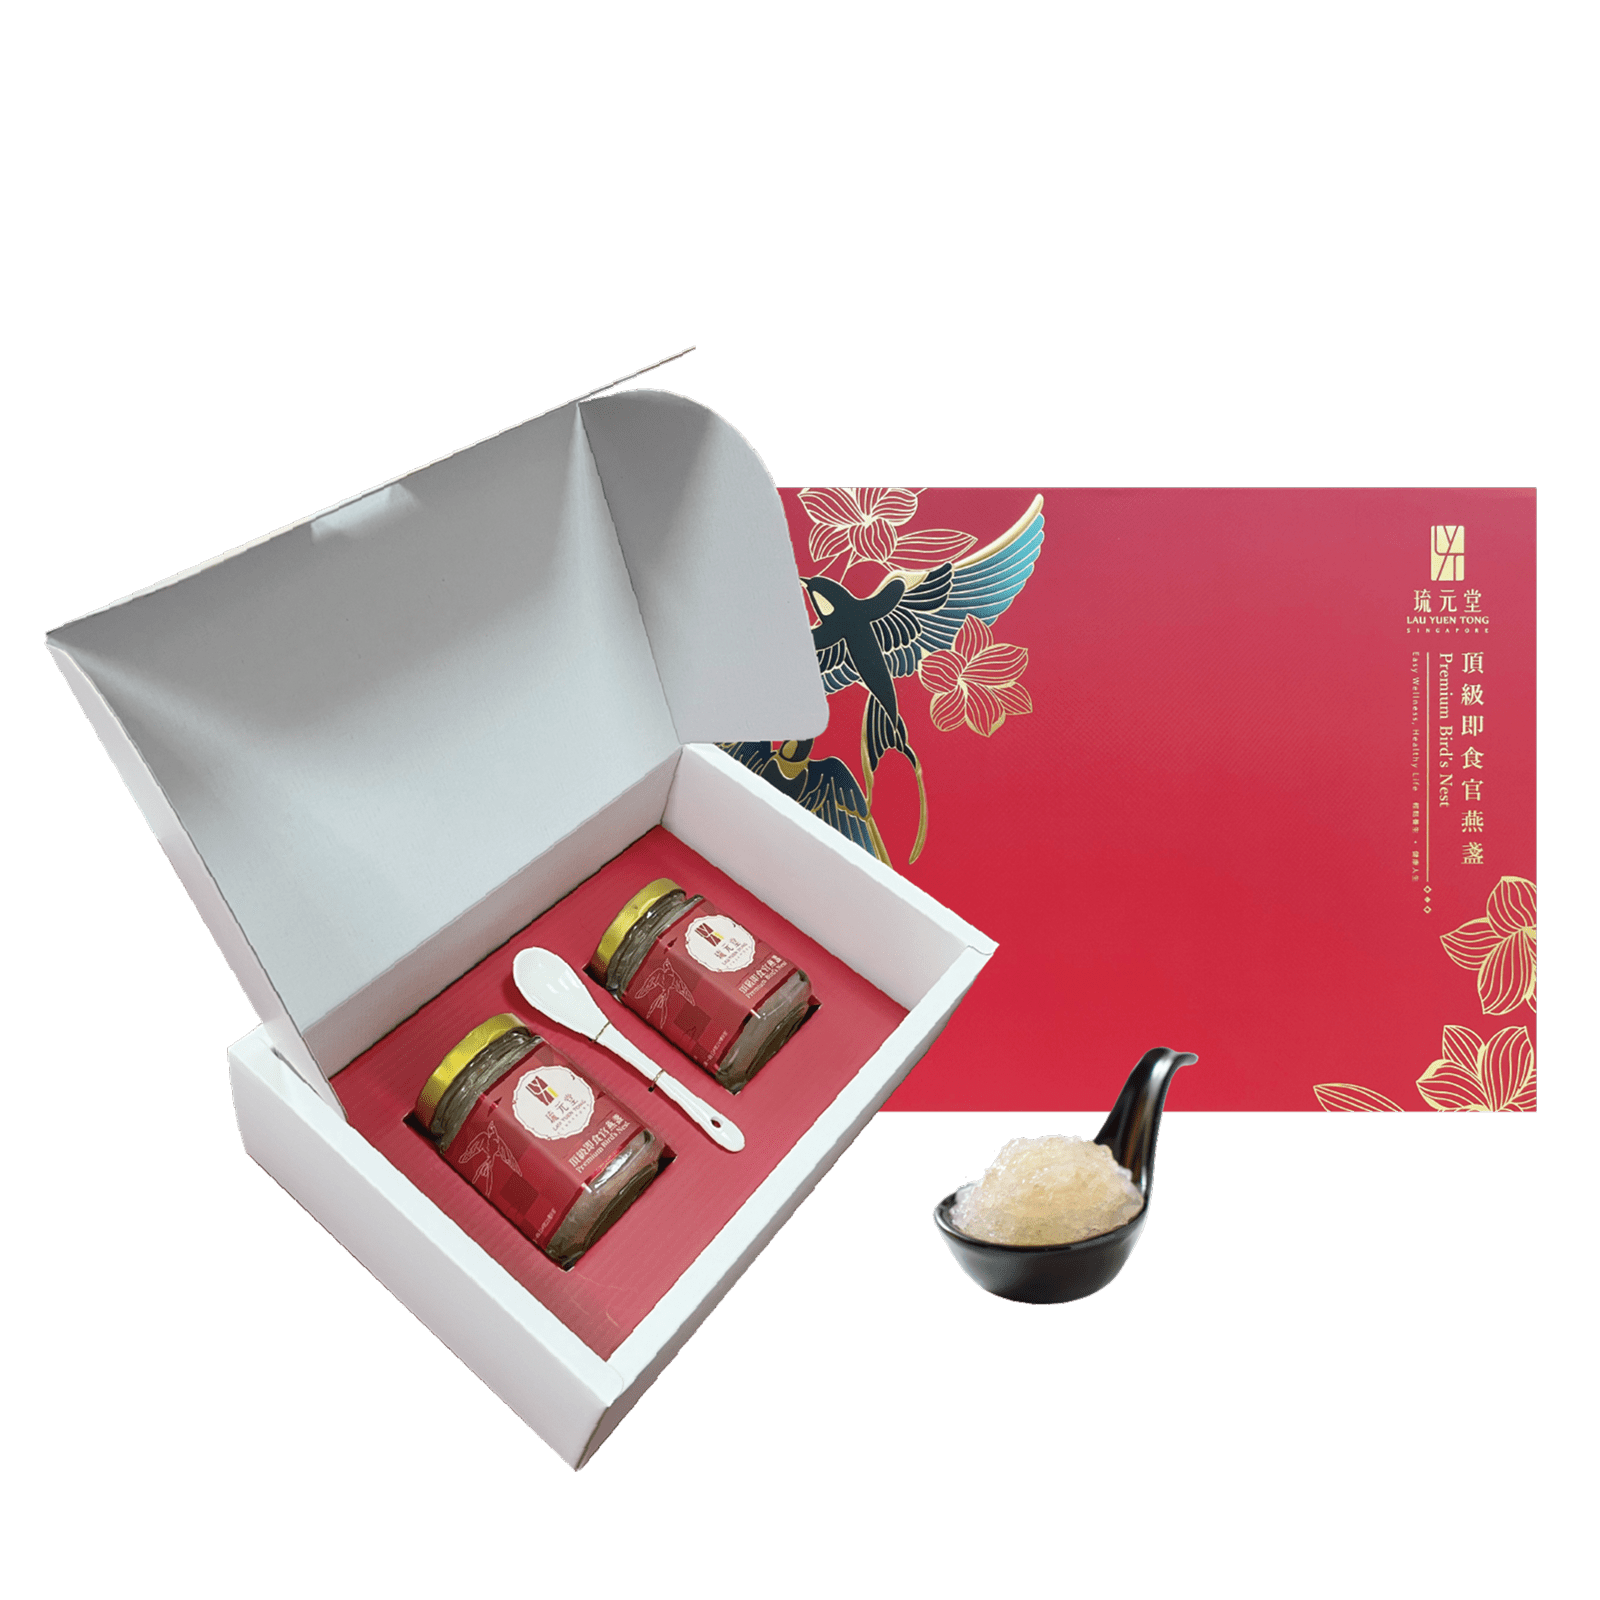 【琉元堂】燕窩系列-頂級即食官燕盞2入禮盒(新包裝)  全新升級版